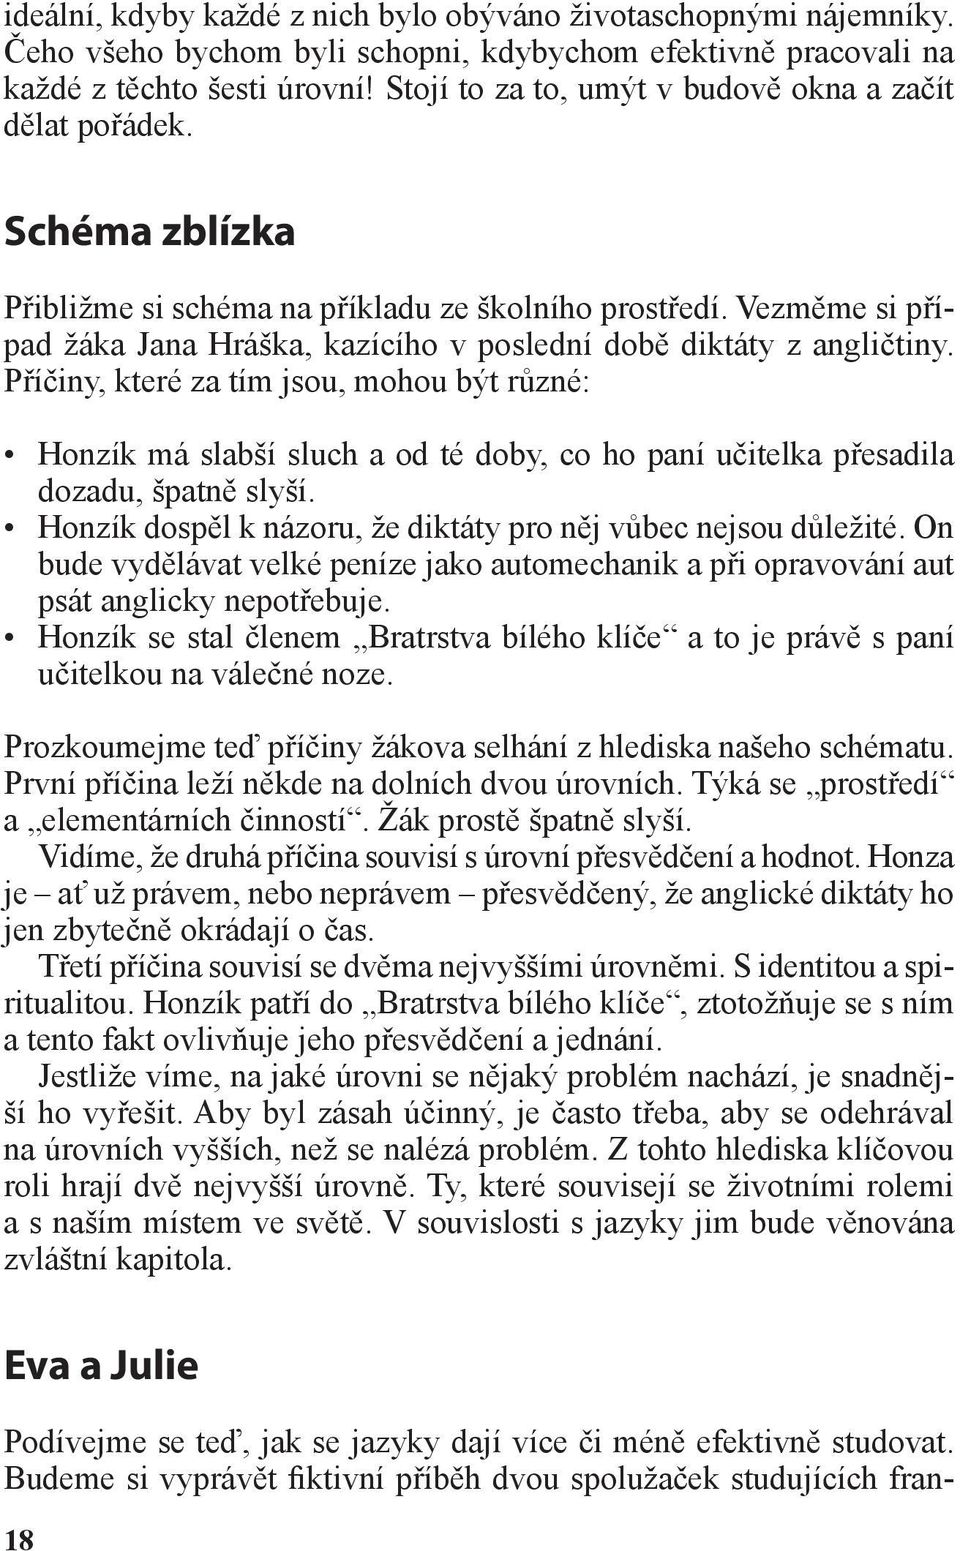 Vezměme si případ žáka Jana Hráška, kazícího v poslední době diktáty z angličtiny.